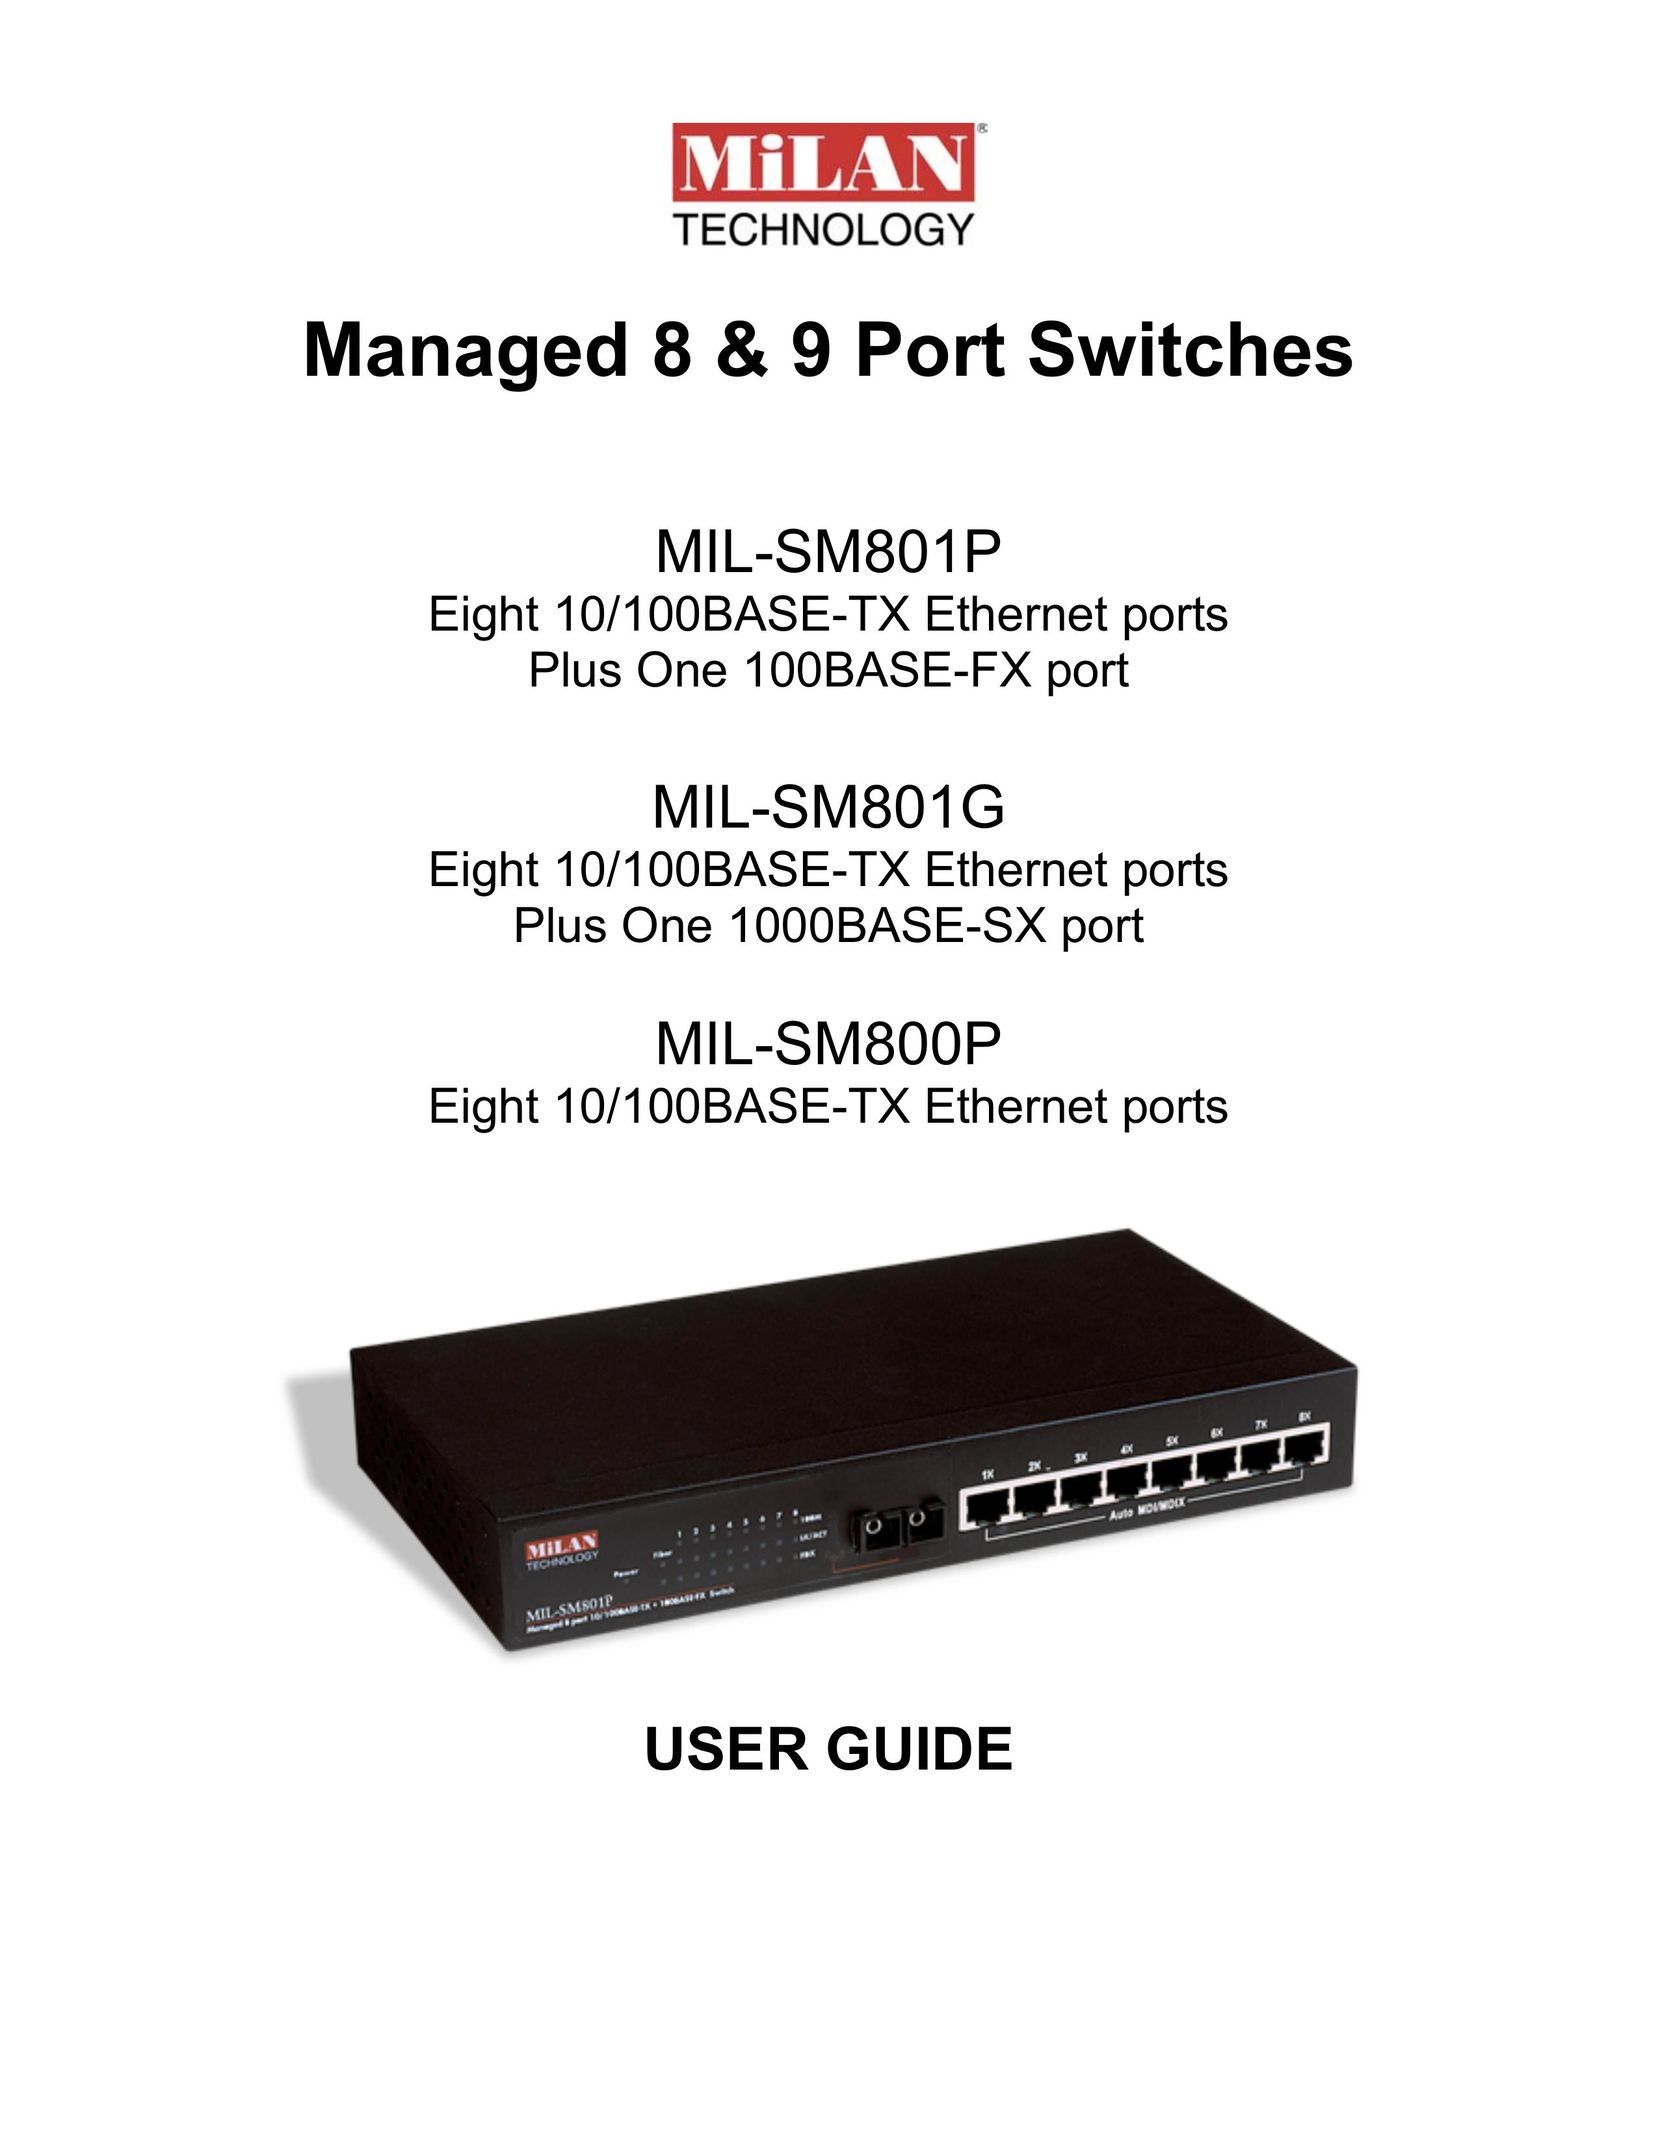 Milan Technology MIL-SM800P Switch User Manual